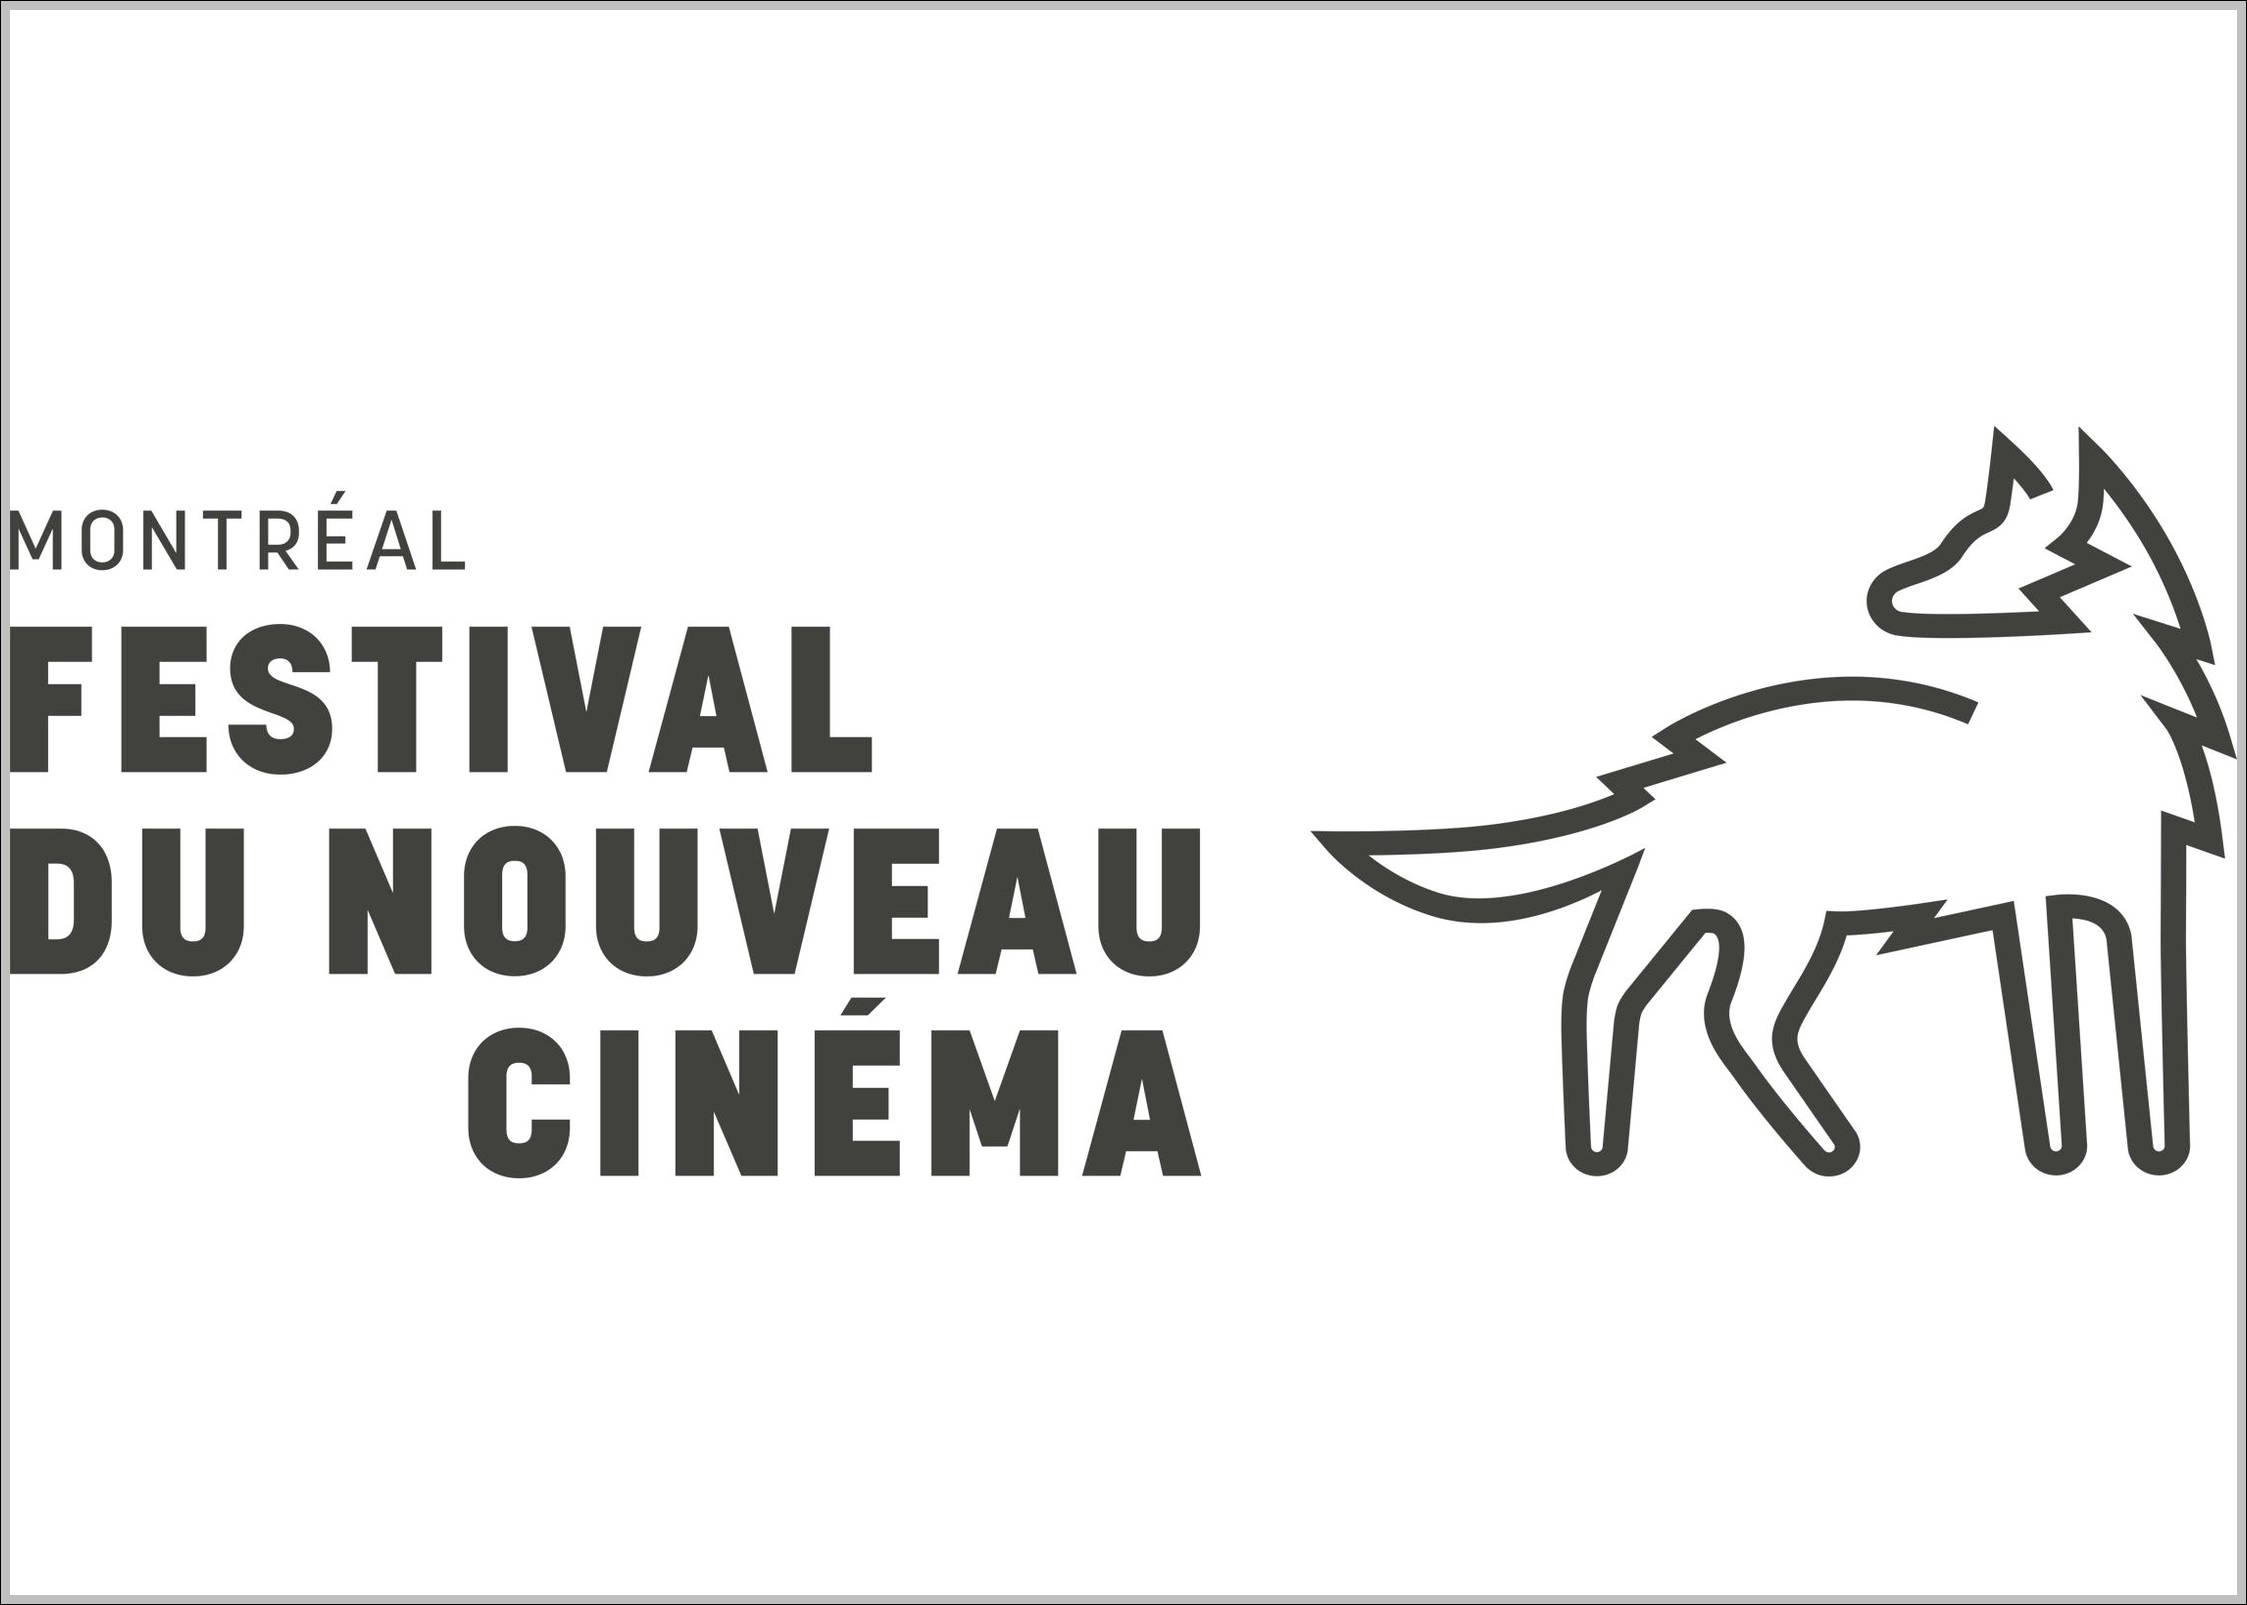 Festival du nouveau cinéma logo and sign